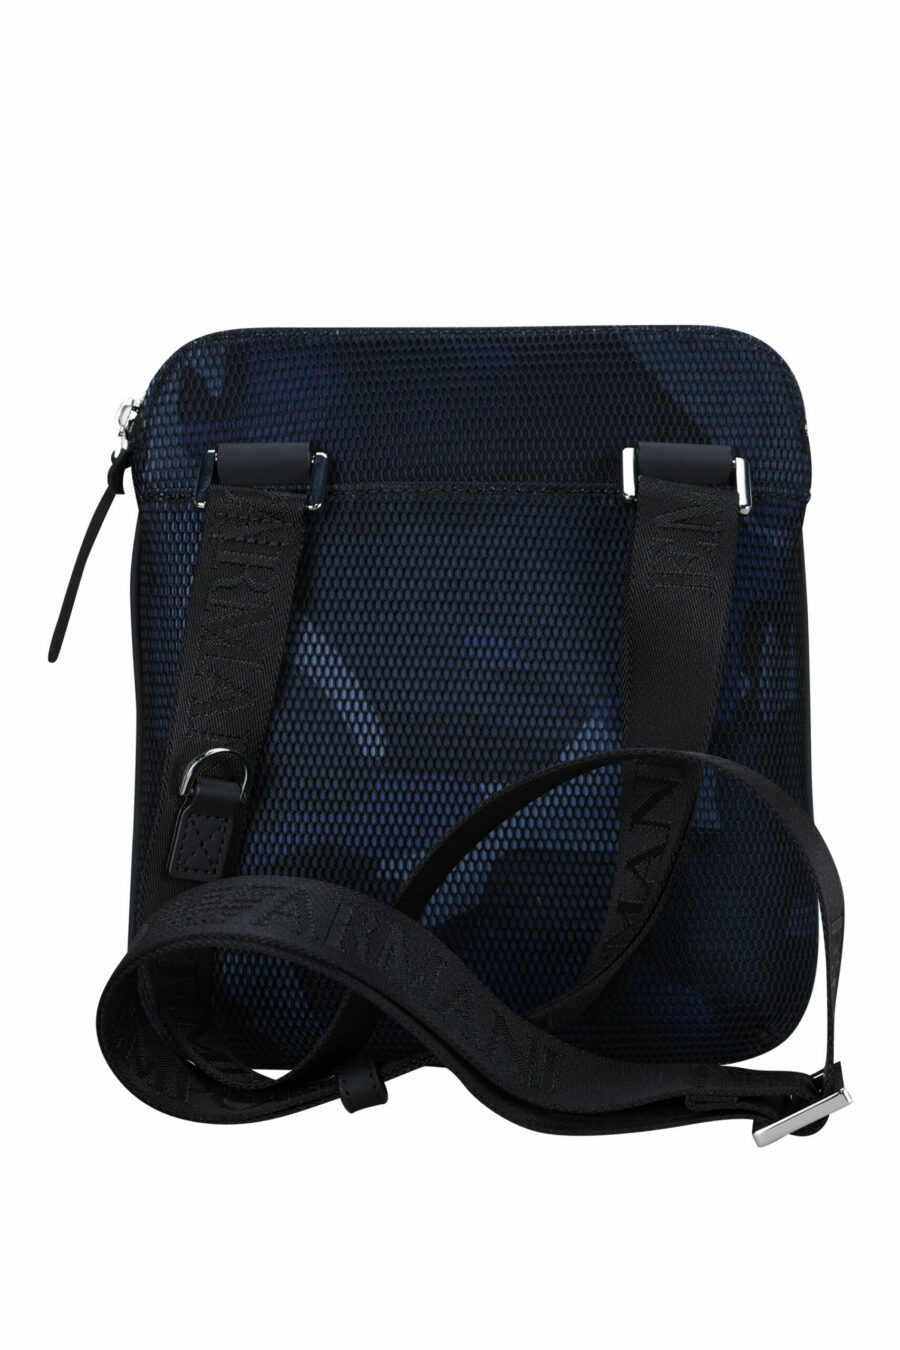 Blaue Camouflage Crossbody Bag mit Logo - 8057767487683 2 skaliert